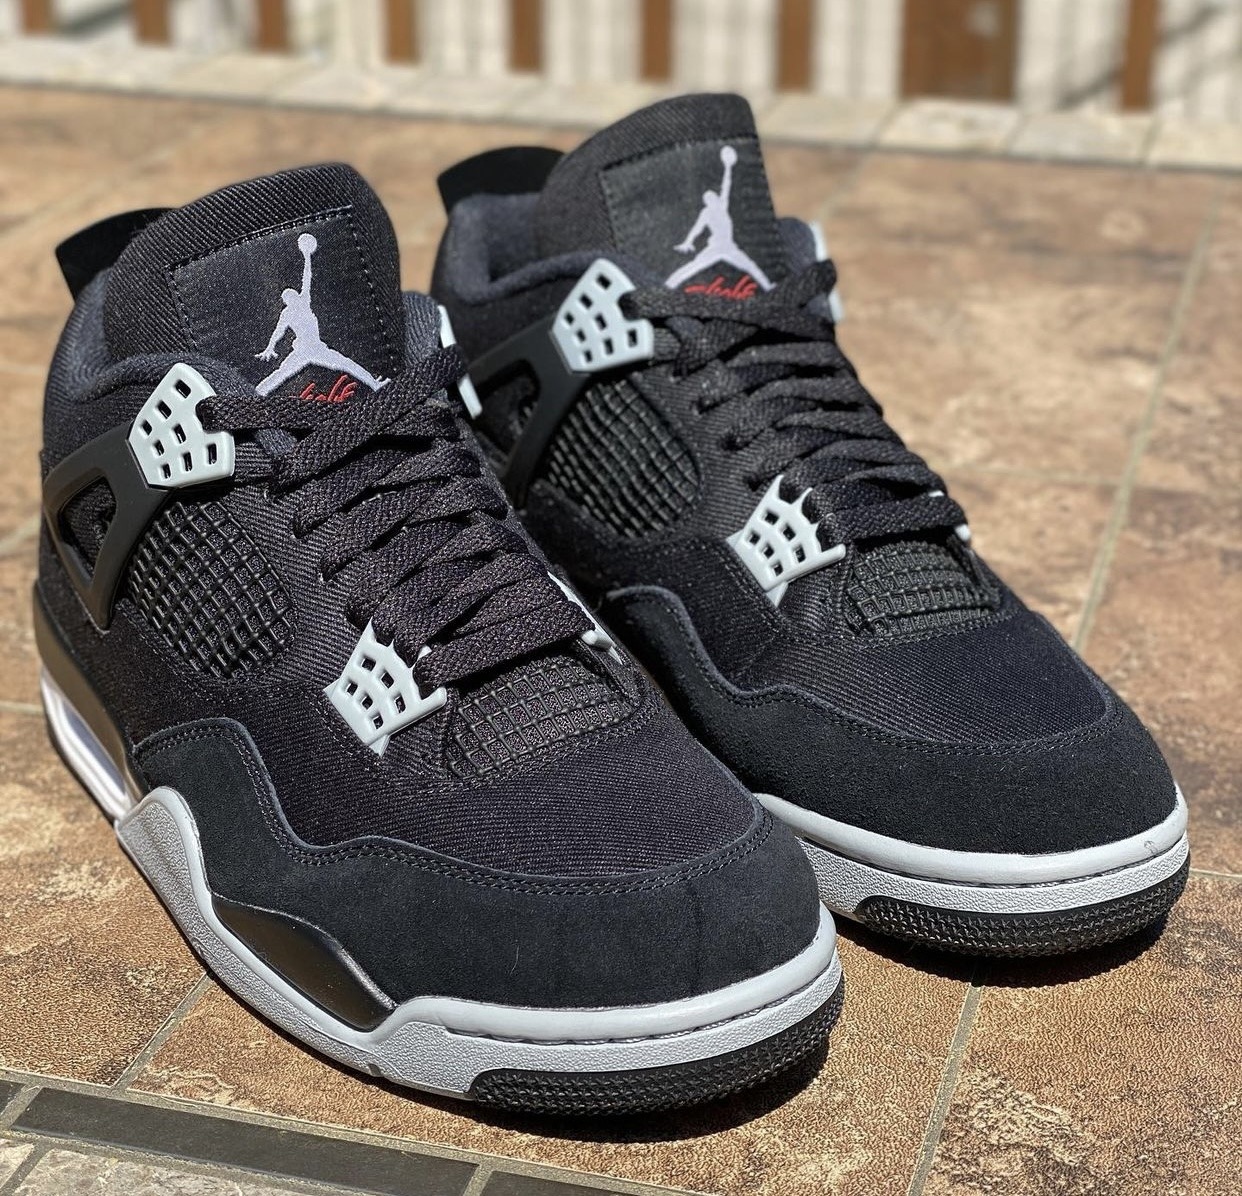 hay fecha lanzamiento del Air Jordan 'Black Canvas' | Desempacados